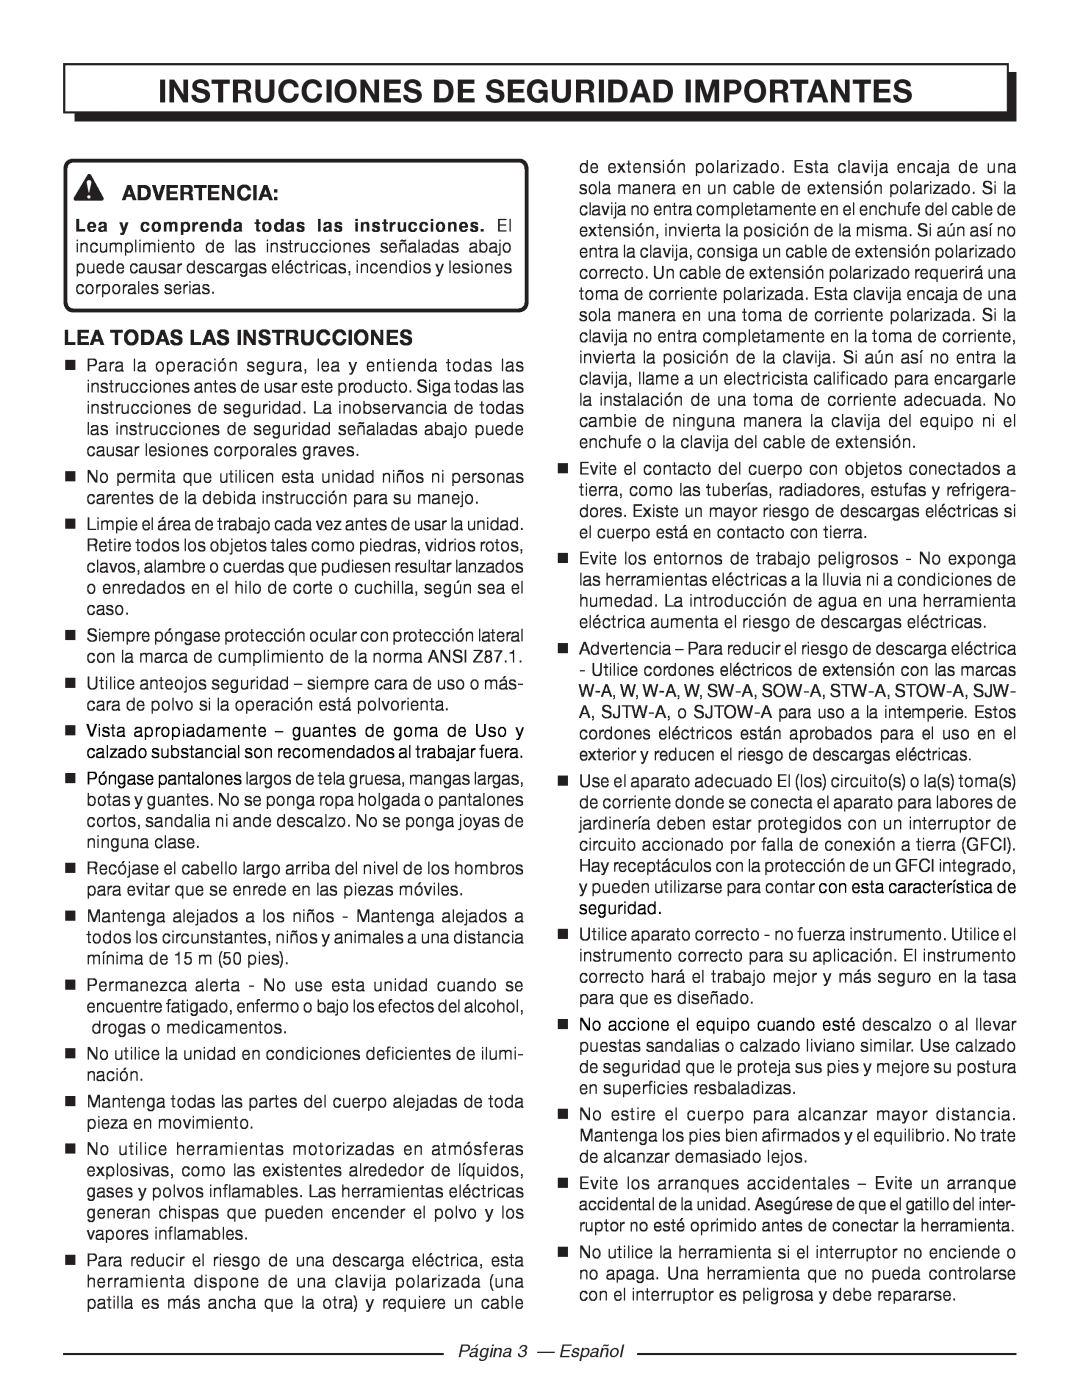 Homelite UT41120 Instrucciones De Seguridad Importantes, Advertencia, Lea todas las instrucciones, Página 3 - Español 